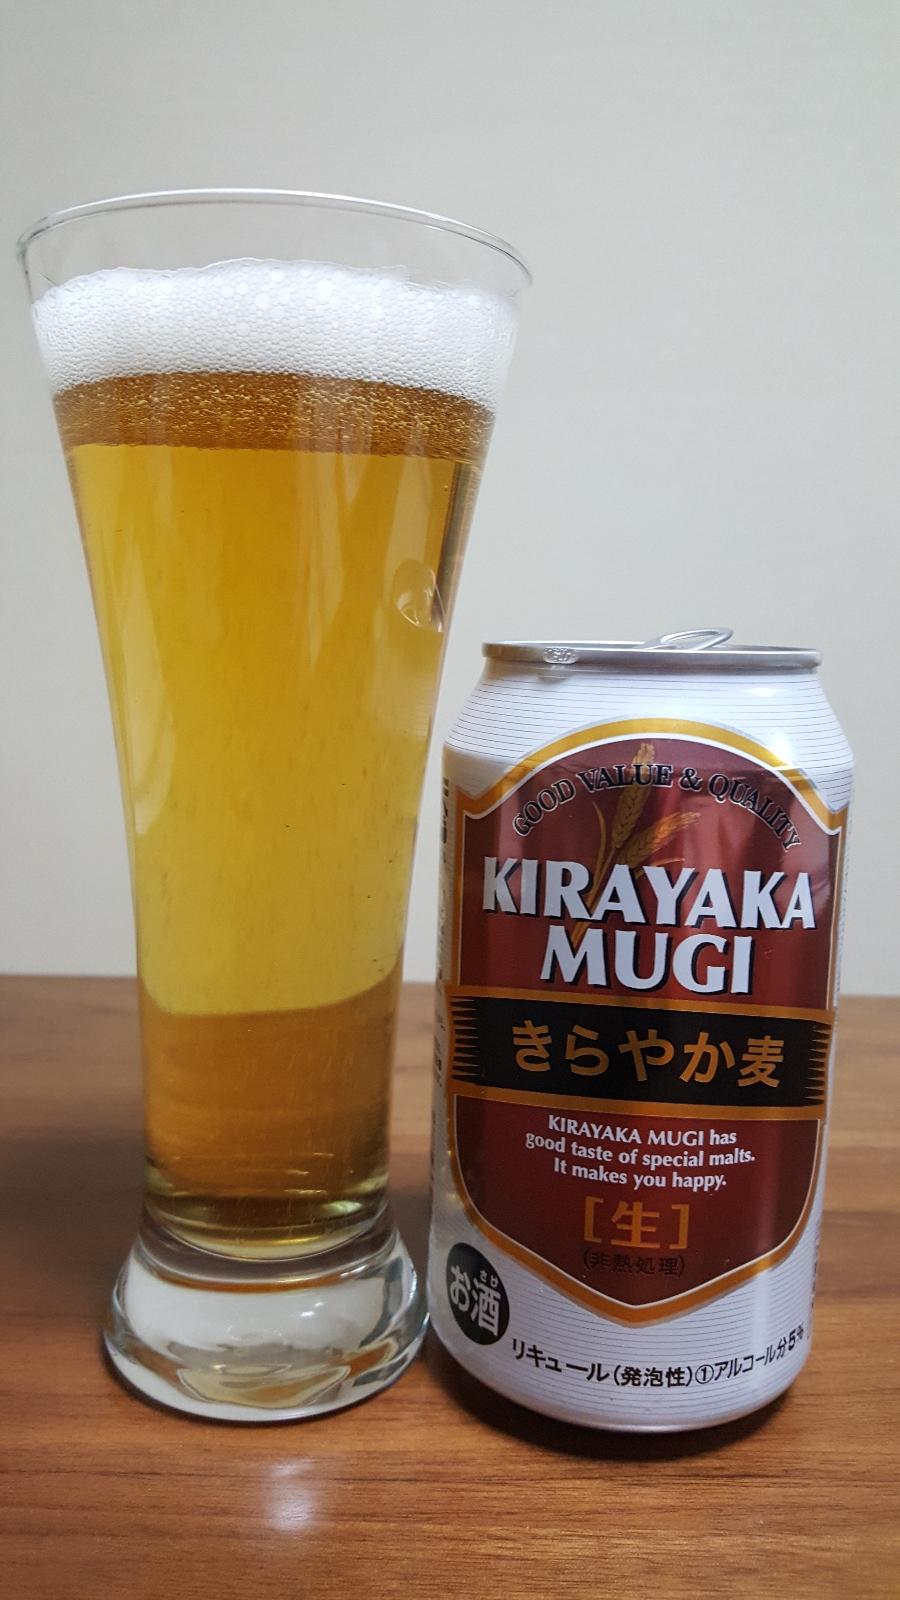 Kirayaka Mugi